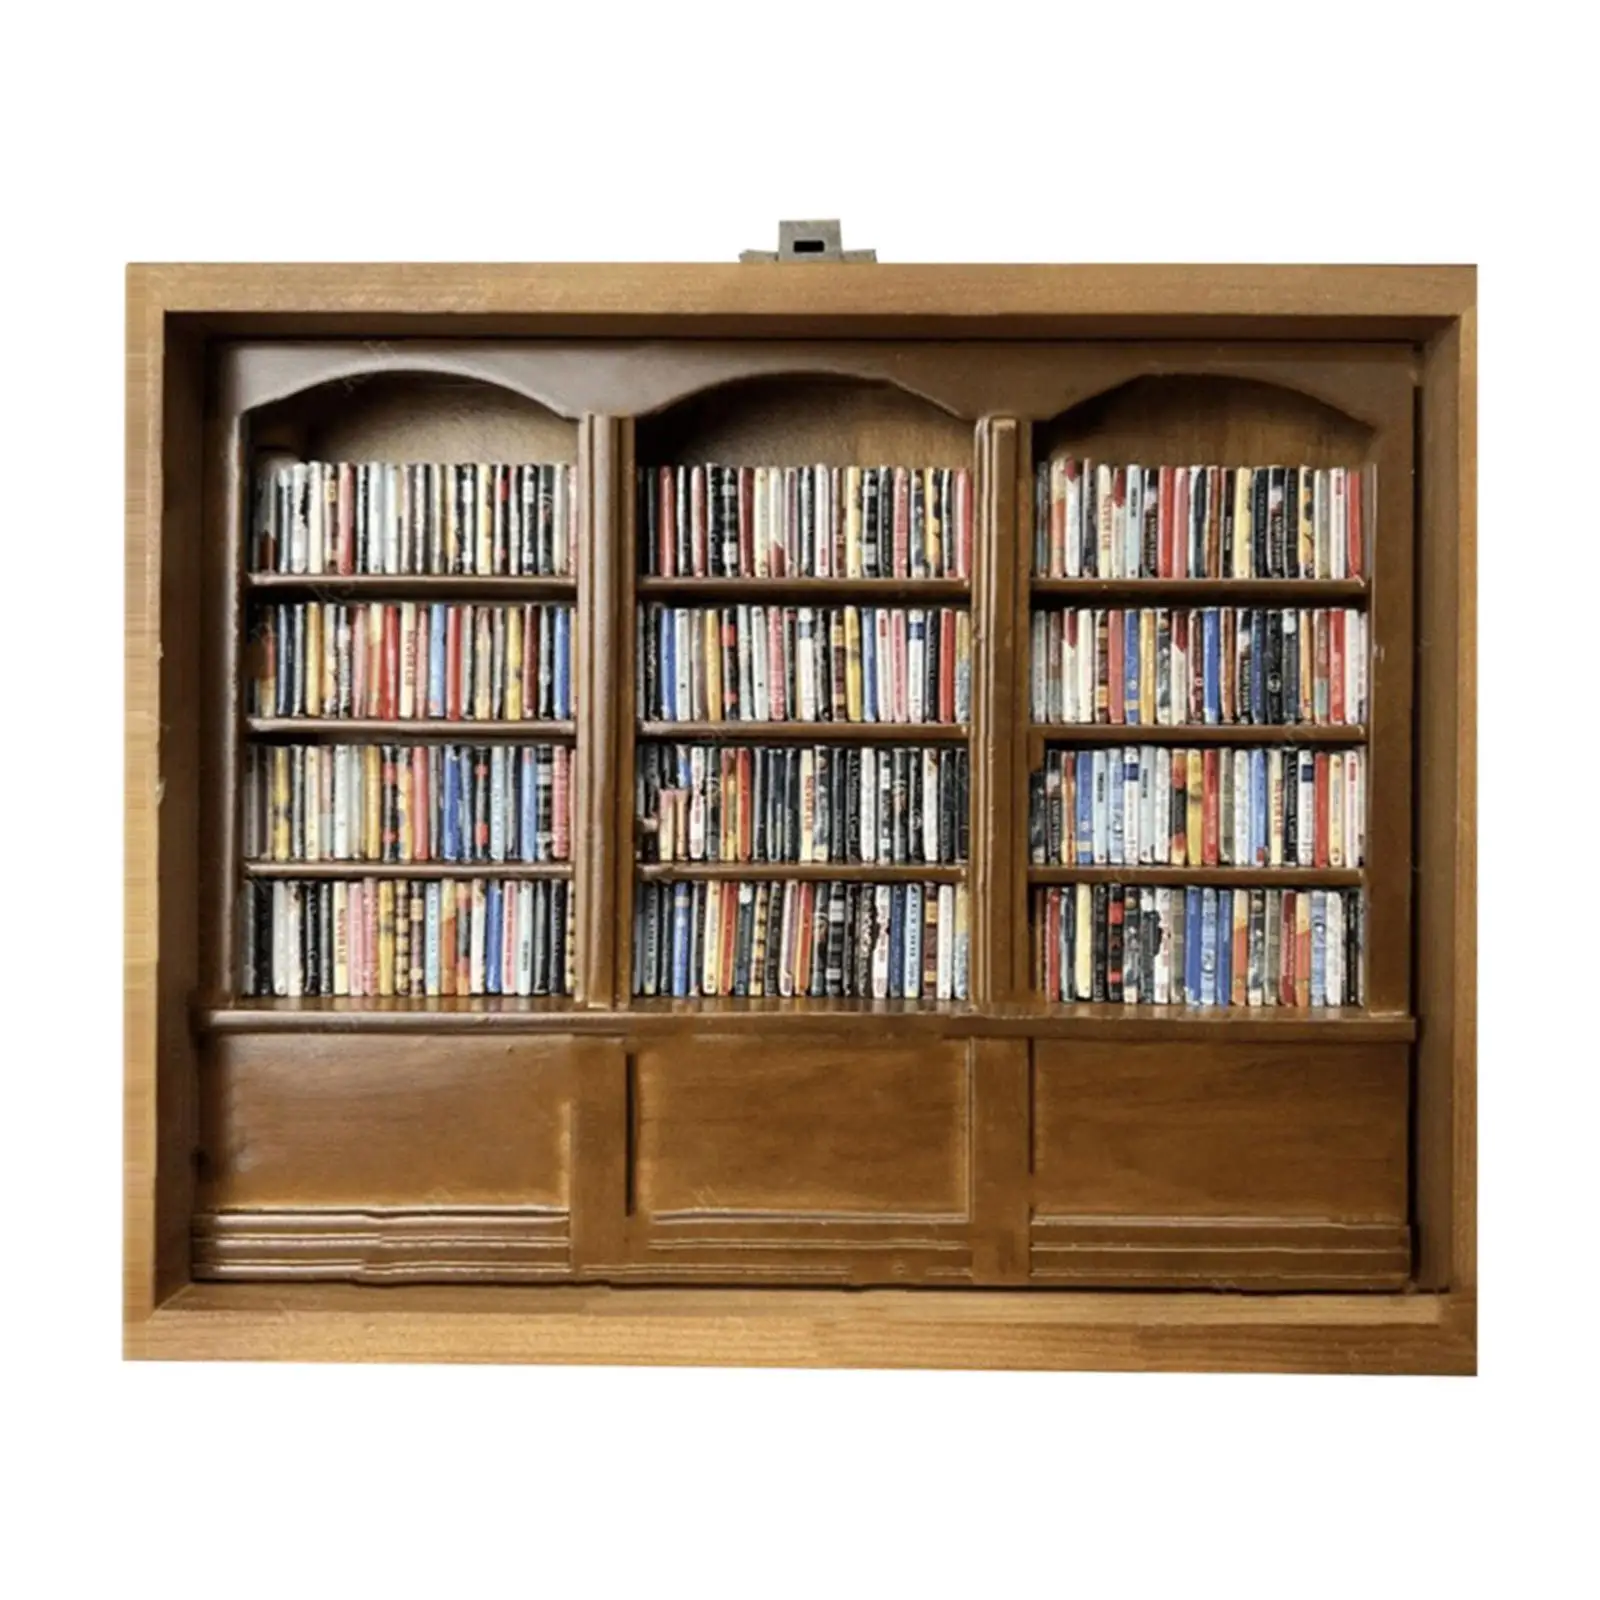 

Dollhouse Wood Bookshelf with Books Miniature Mini Display Cabinet Versatile Sturdy Ornaments Mini Furniture 25.4x20x7.6cm